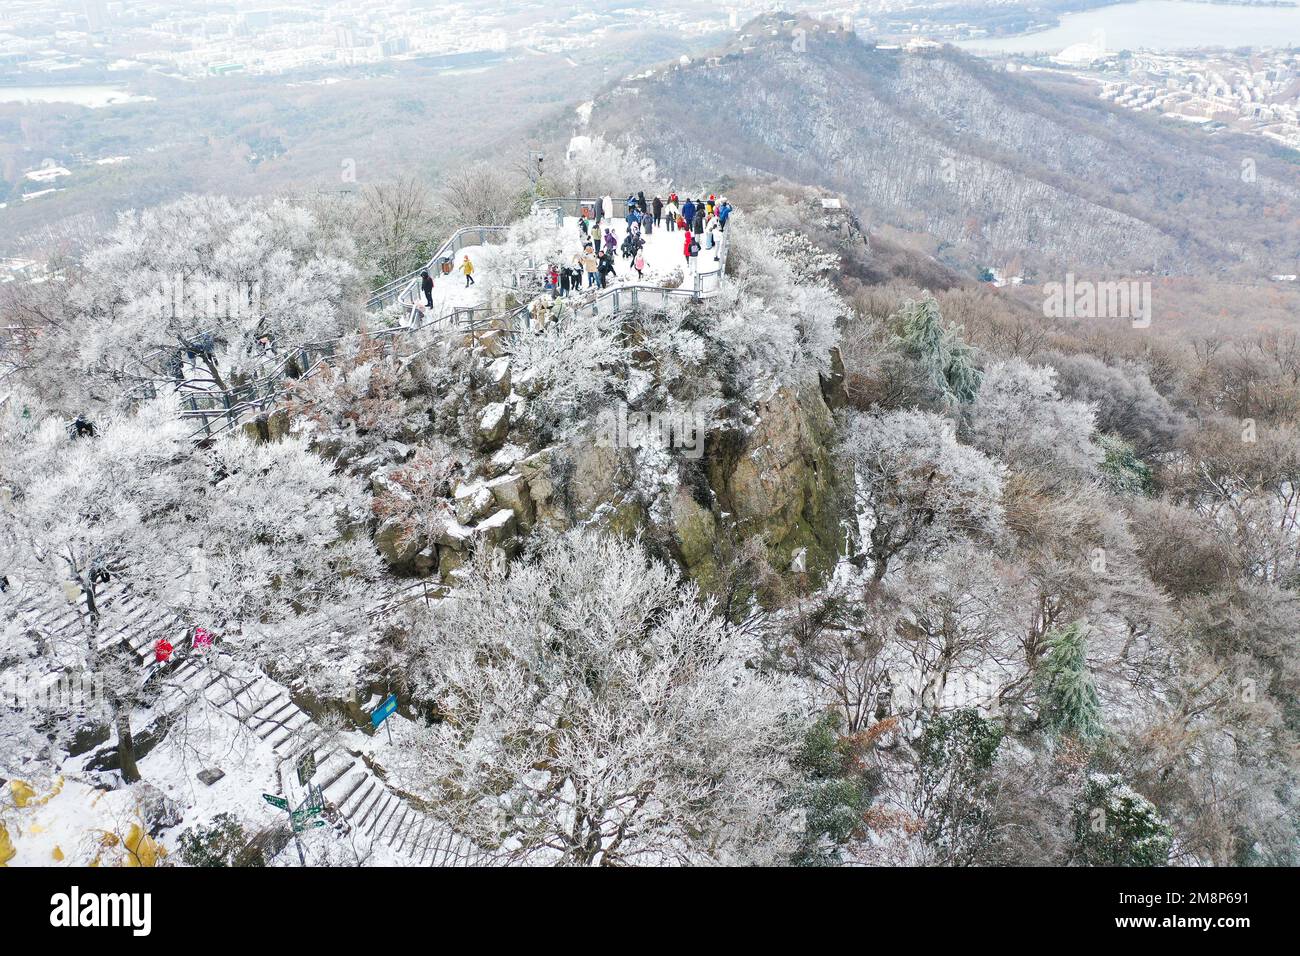 NANJING, CHINA - 15. JANUAR 2023 - Touristen genießen den Schnee am Zijin Mountain in Nanjing, Ostchina Provinz Jiangsu, 15. Januar 2023. Stockfoto